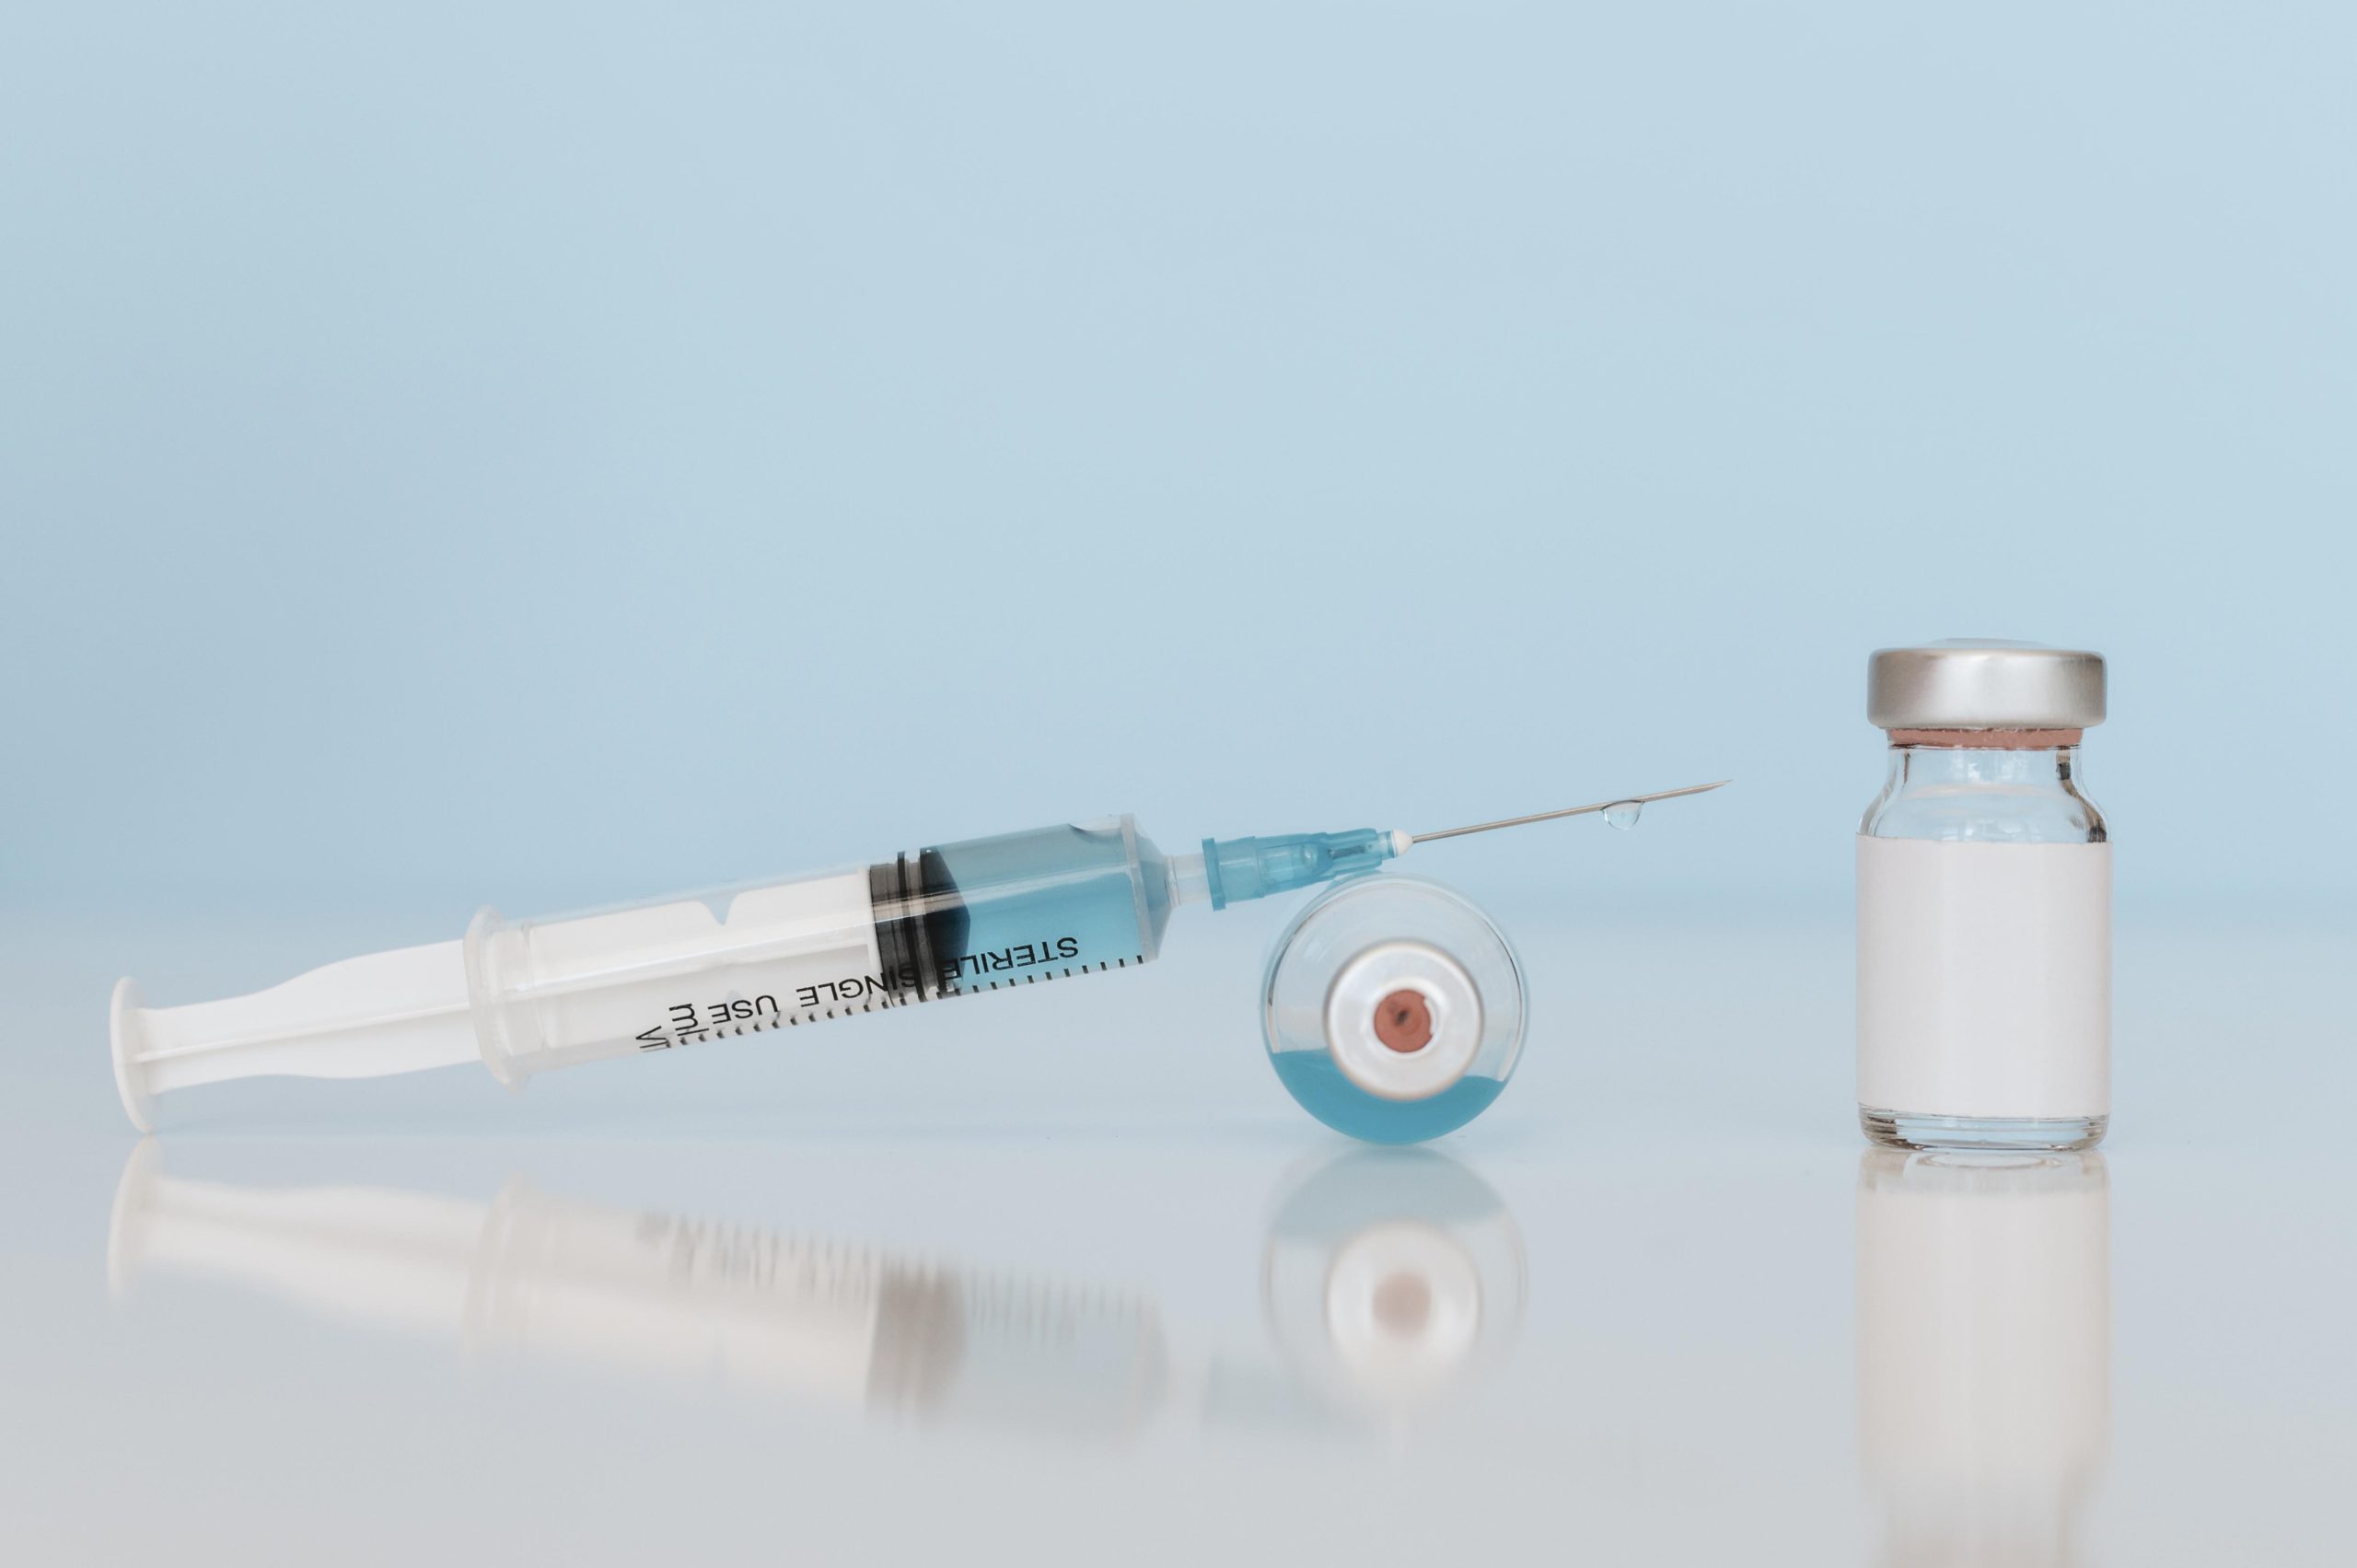 Le ministère de la Santé suspend officiellement l’administration du vaccin Johnson & Johnson